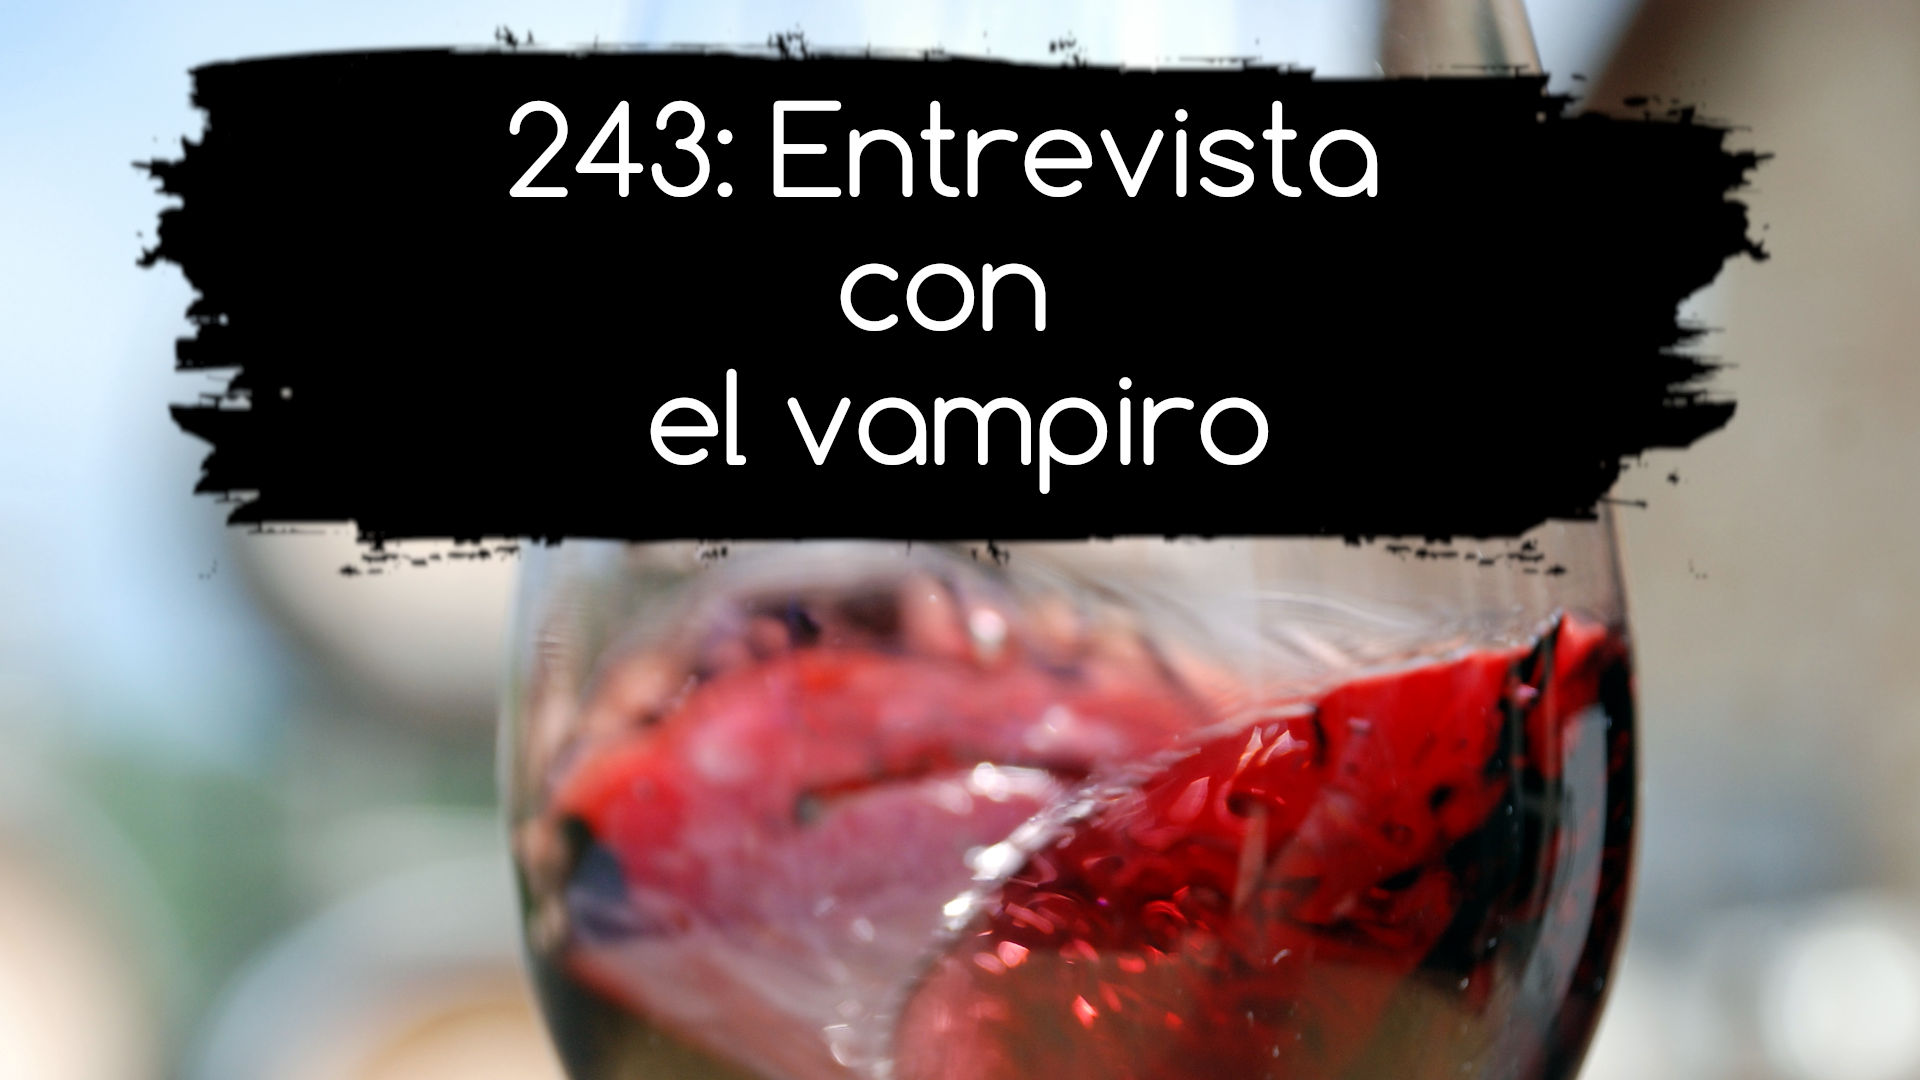 243: Entrevista con el vampiro